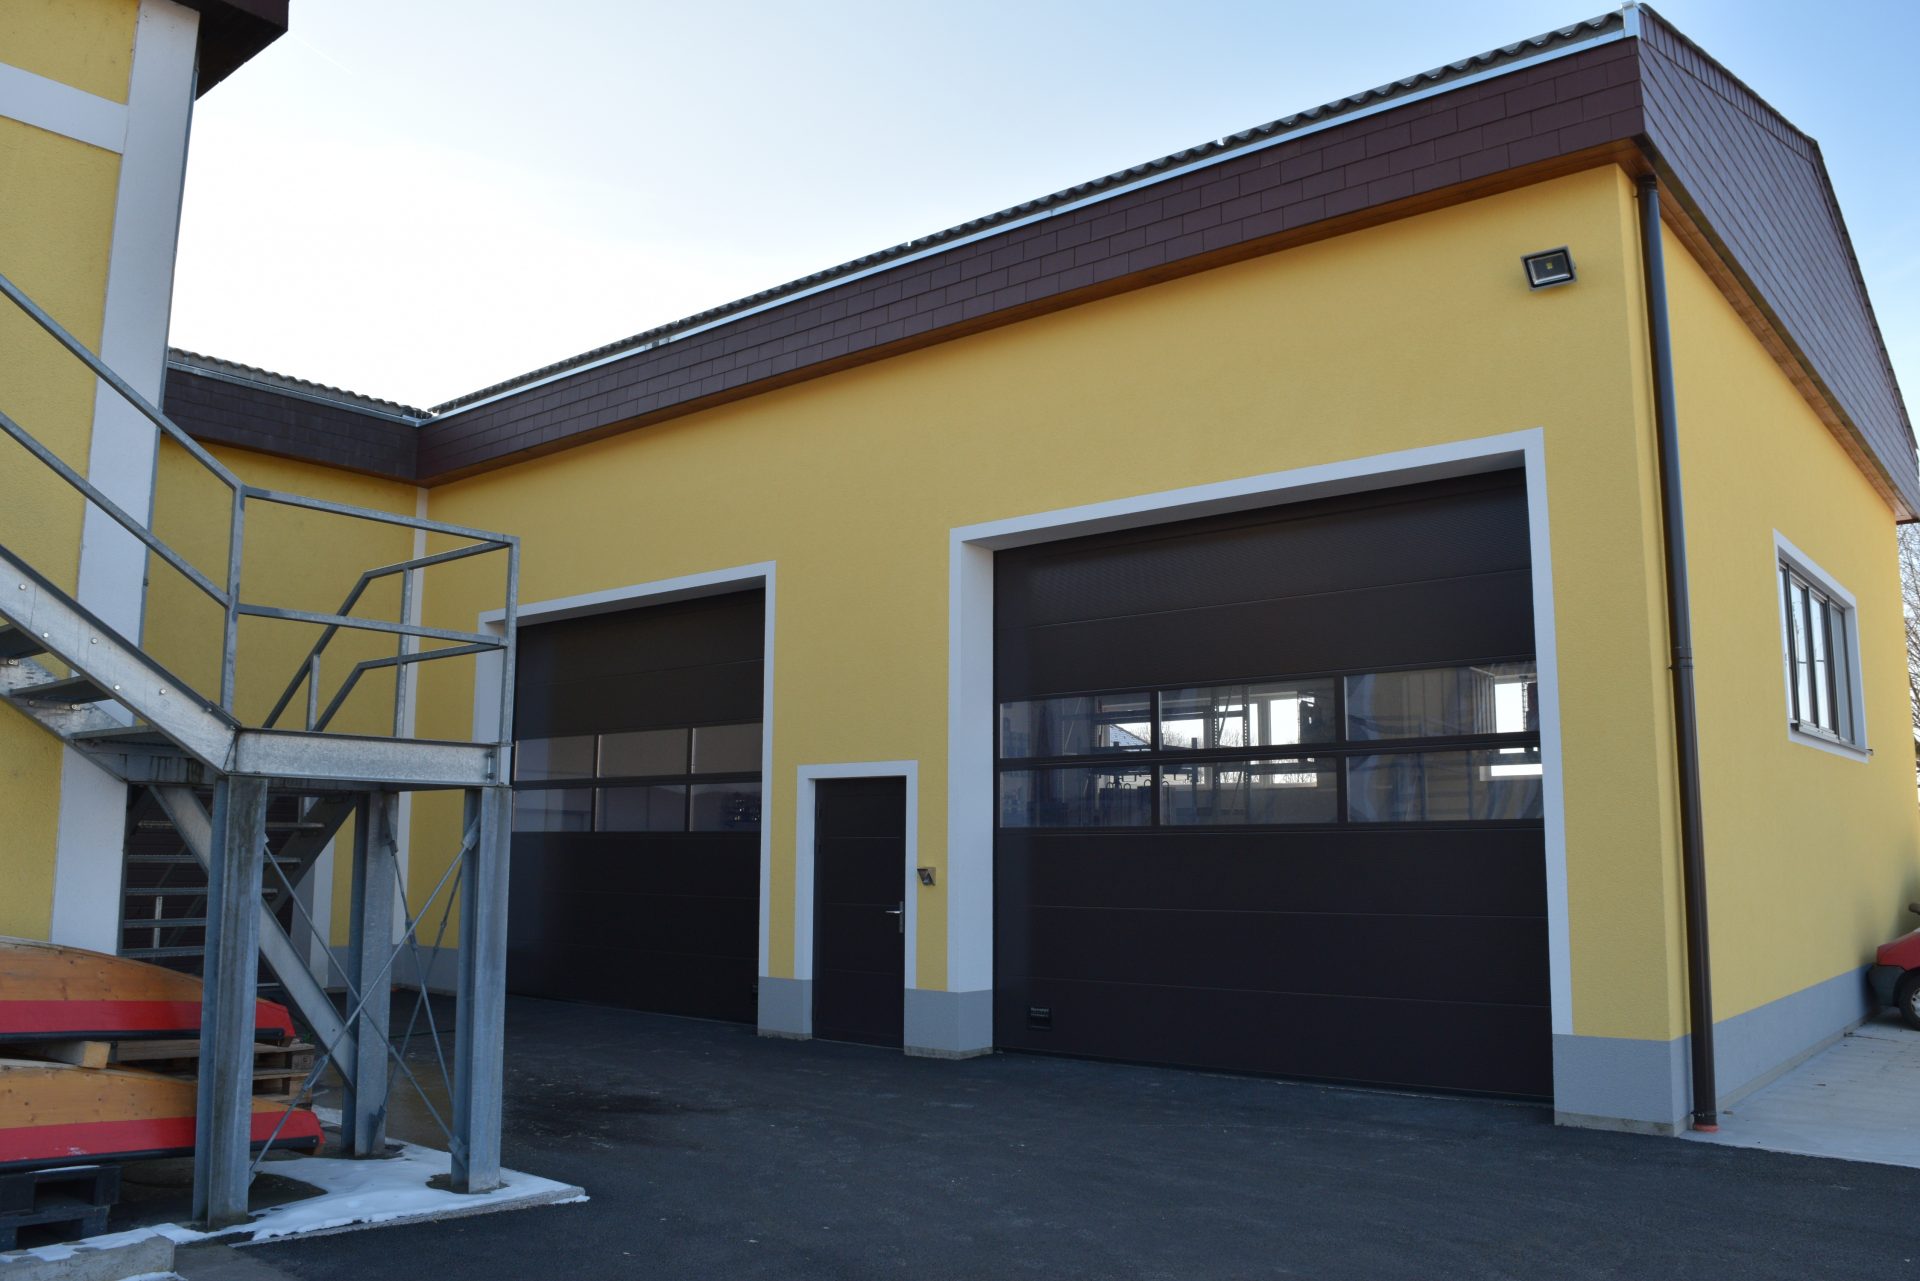 Neubau der Lagerhalle - Freiwillige Feuerwehr Langenstein- Hentschläger Hochbau - Kommunalbau